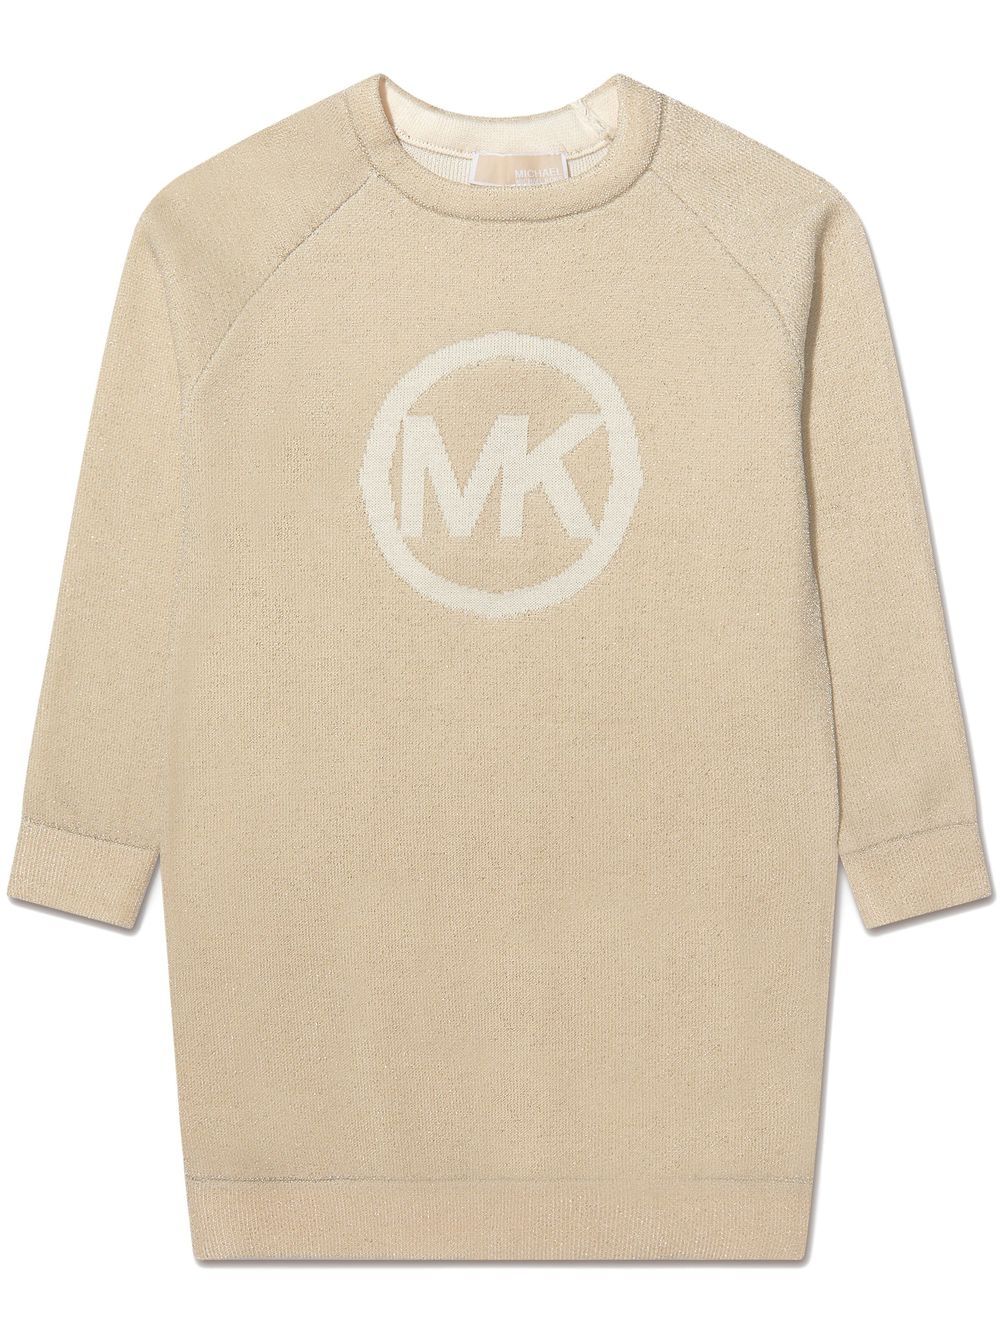 Michael Kors Kids intarsia knit-logo jumper dress - Neutrals